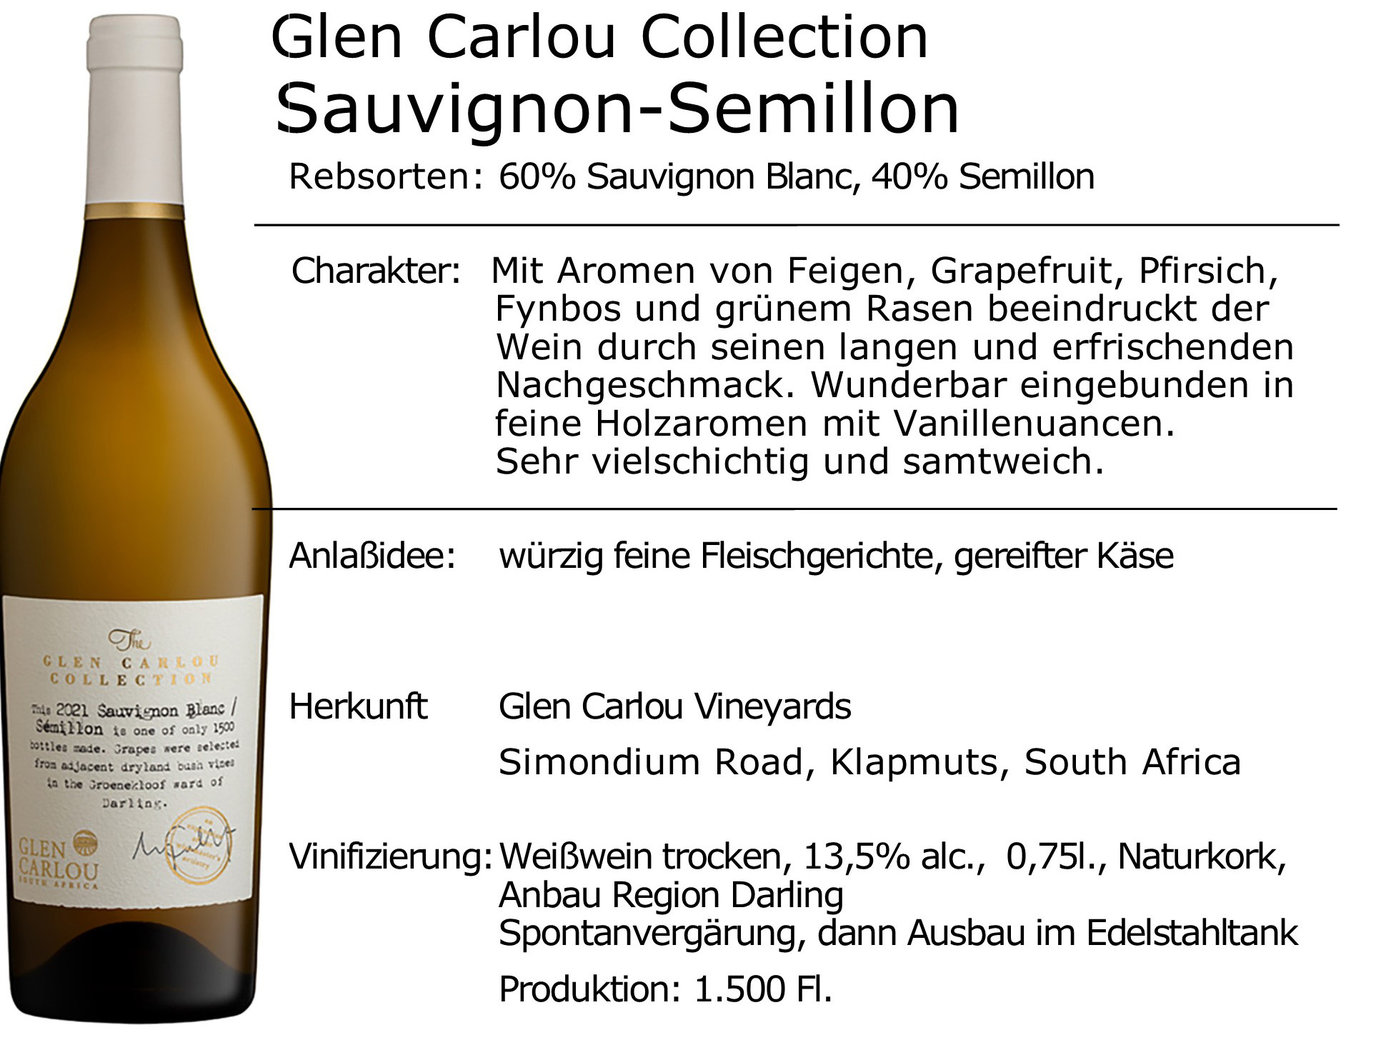 Glen Carlou Collection Sauvignon-Semillon 2021 -limitiert-